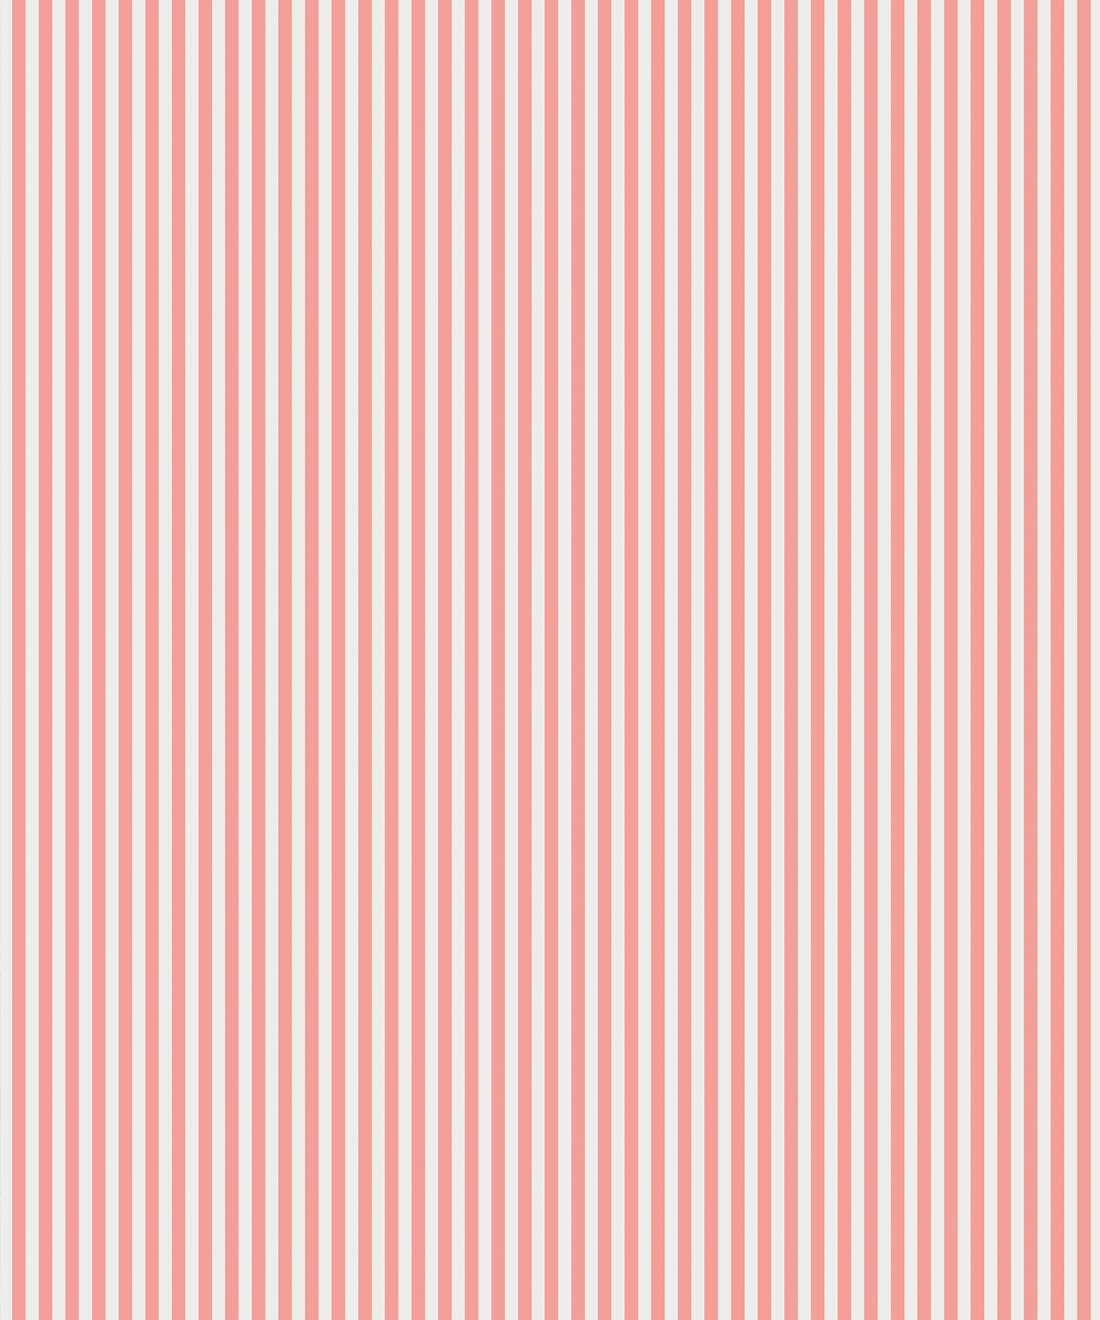 Candy Stripe Wallpaper • Classic Stipe Design